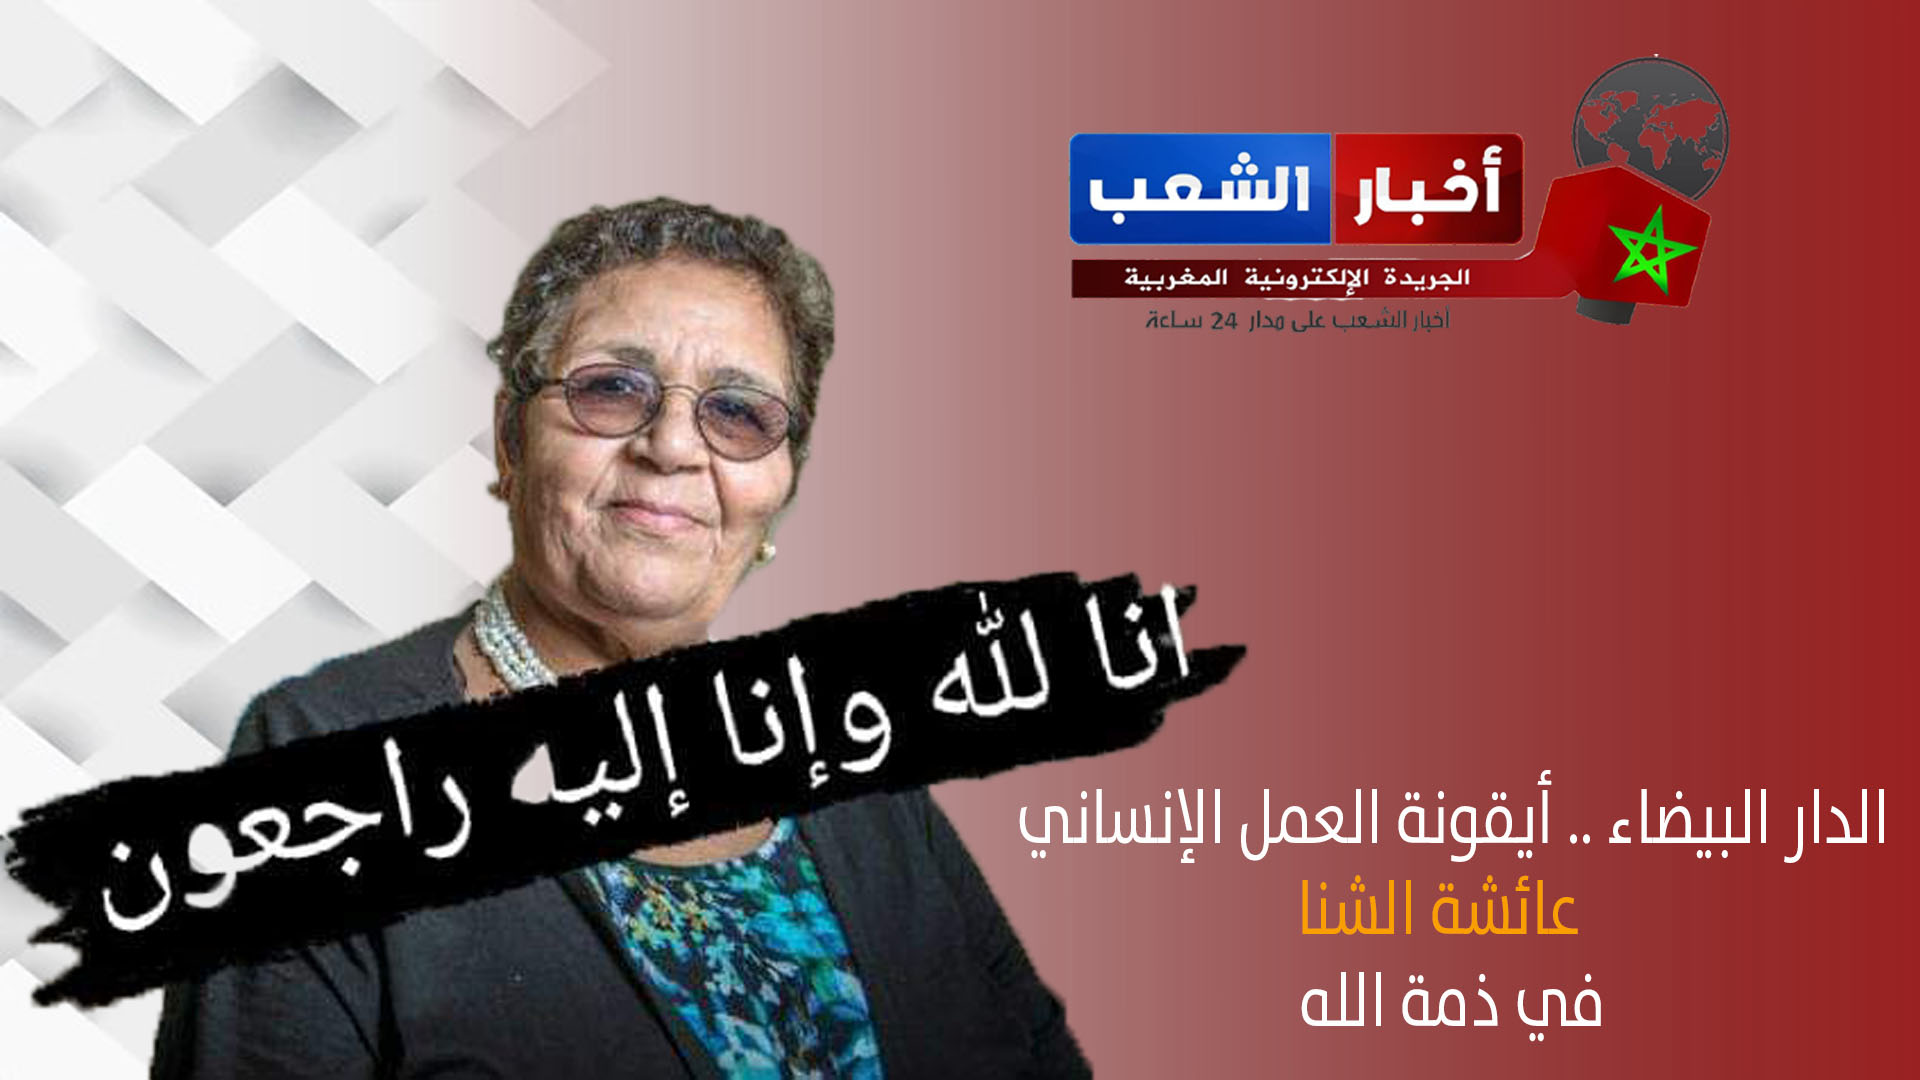 الدار البيضاء .. أيقونة العمل الإنساني عائشة الشنا “ماما عائشة” في ذمة الله